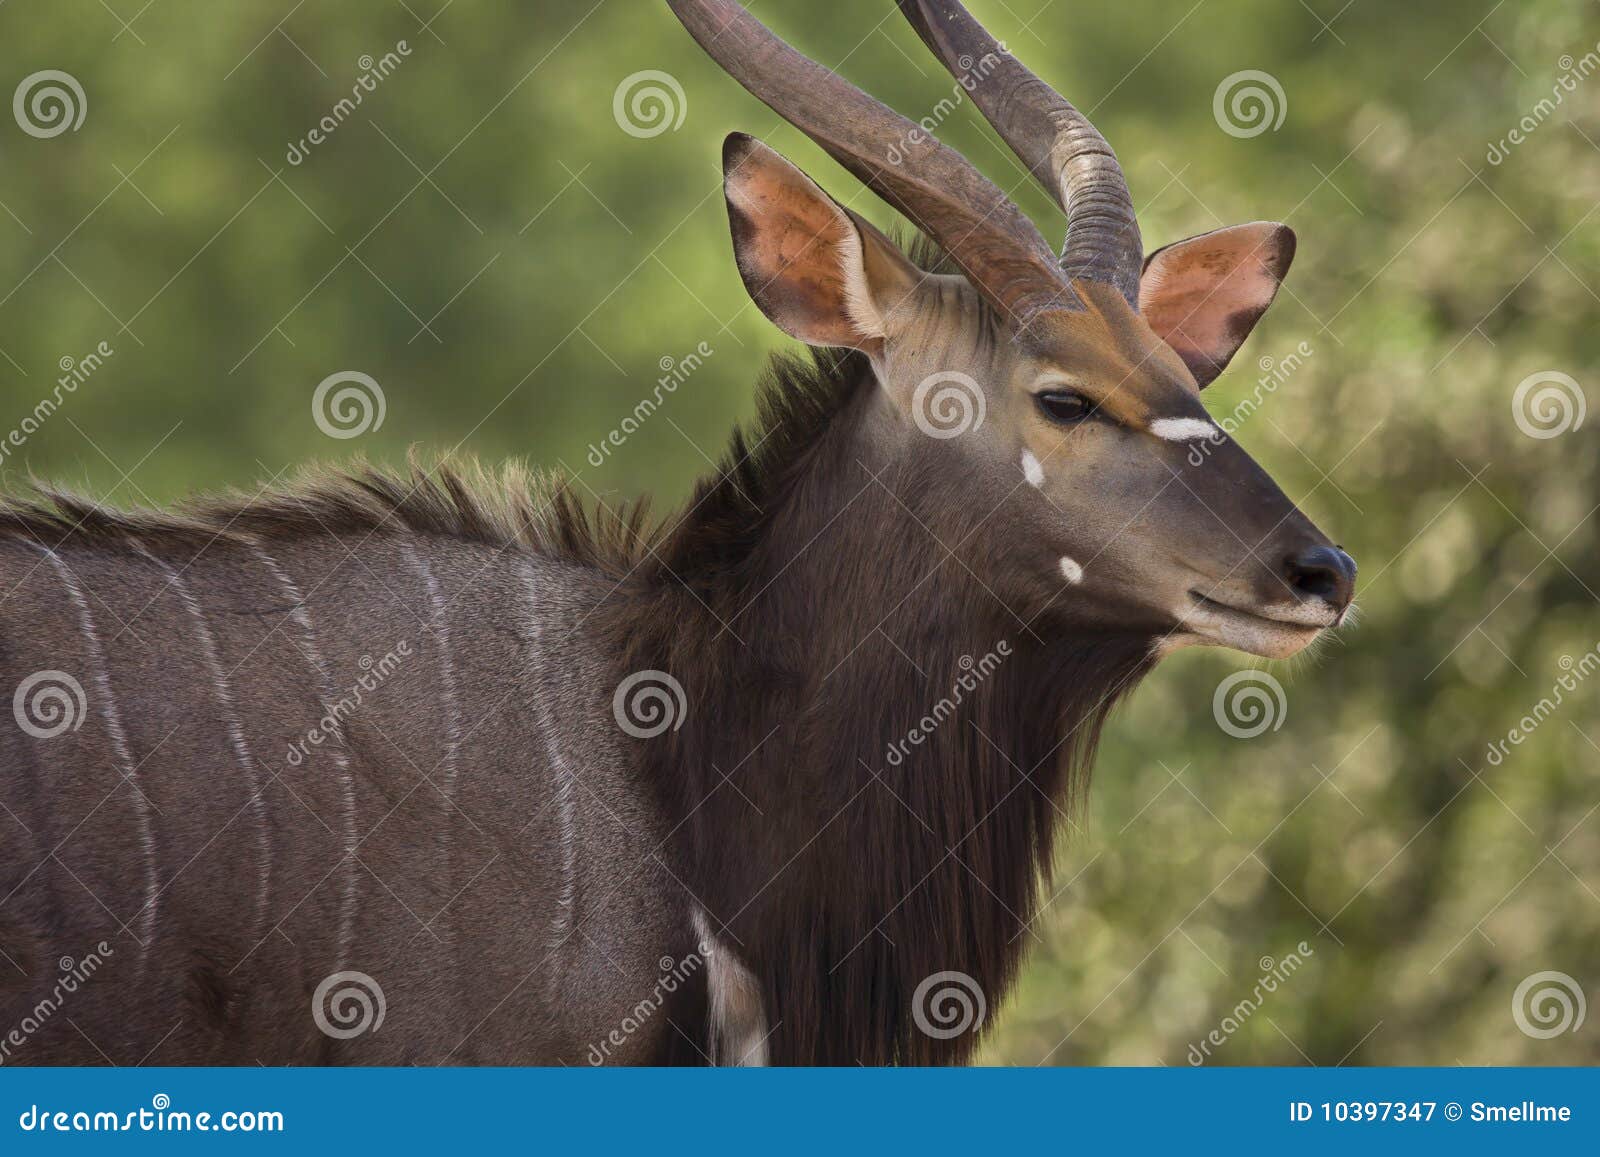 nyala antelope male